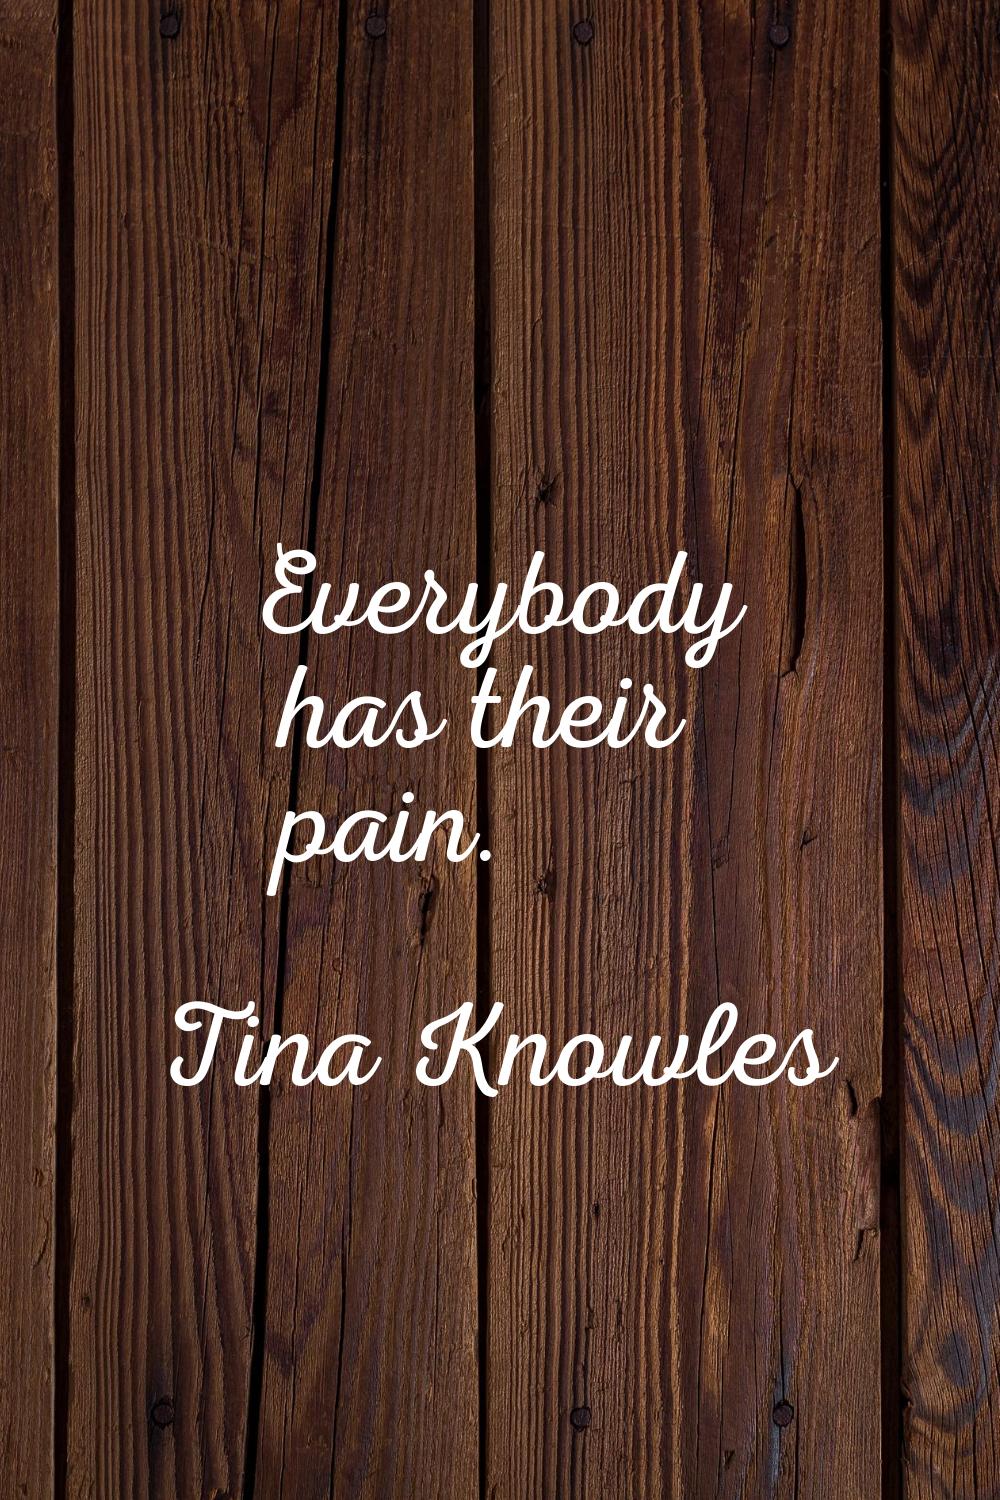 Everybody has their pain.